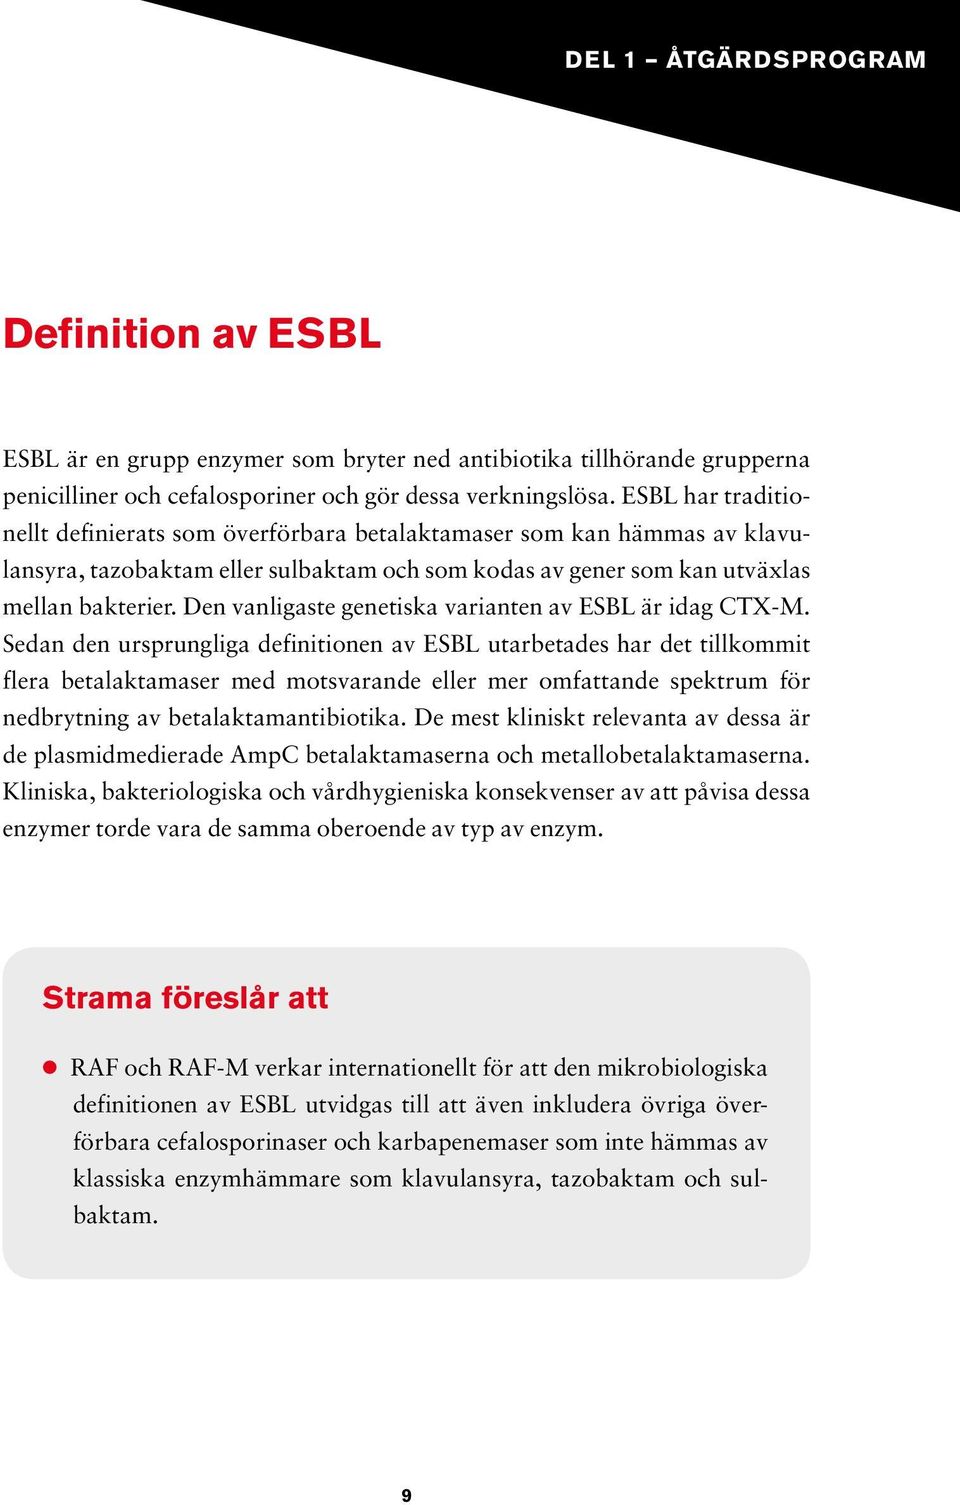 Den vanligaste genetiska varianten av ESBL är idag CTX-M.